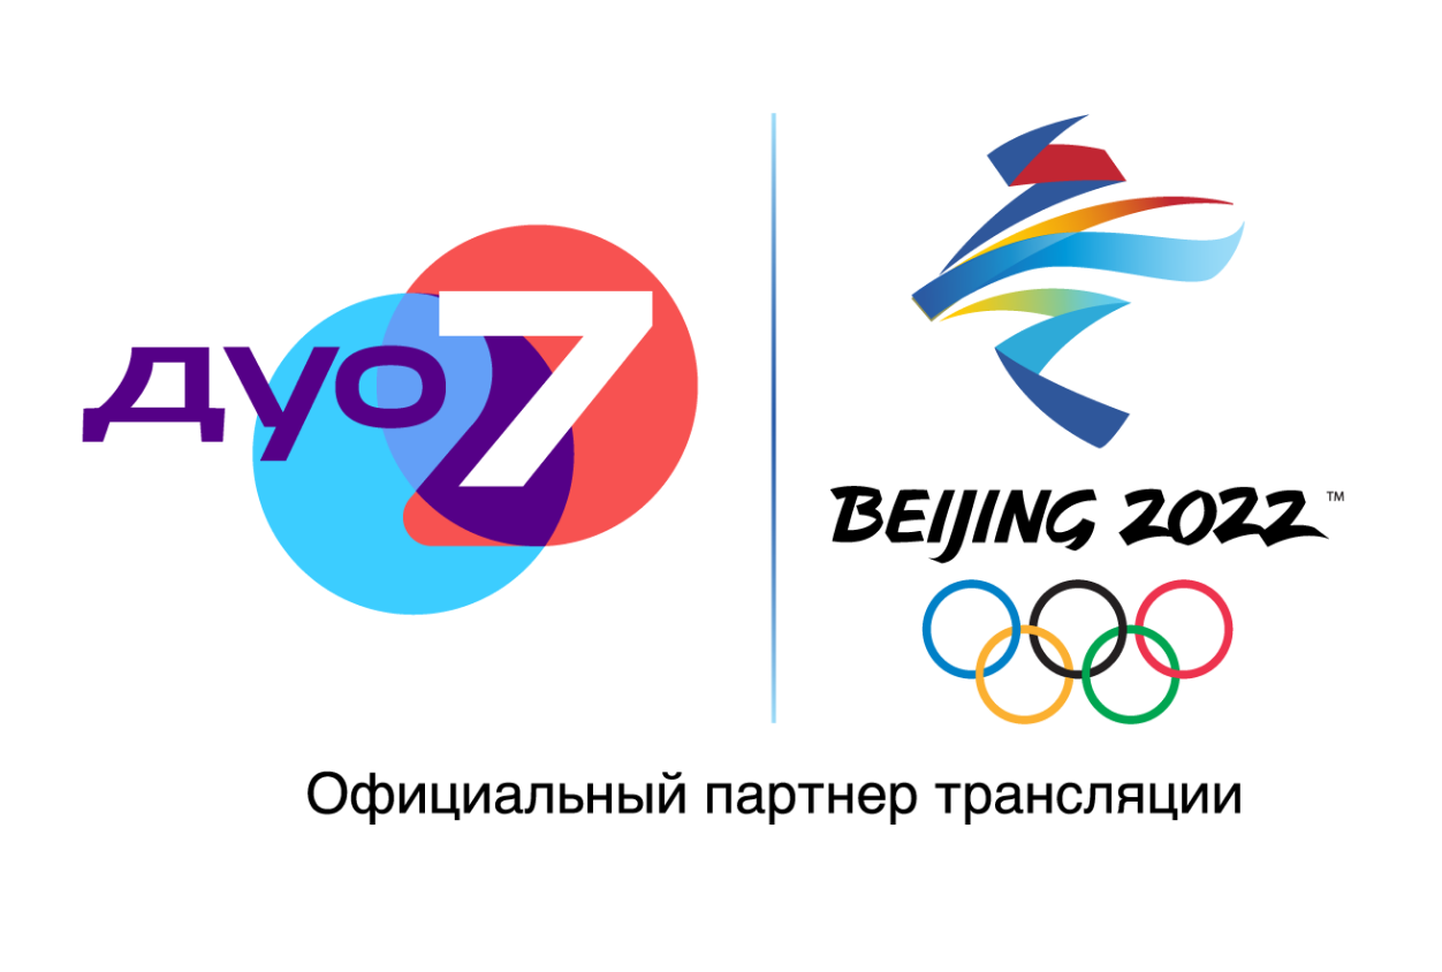 Телеканал Дуо 7 и Rus.Postimees помогают зрителям оказаться в центре олимпийских событий.